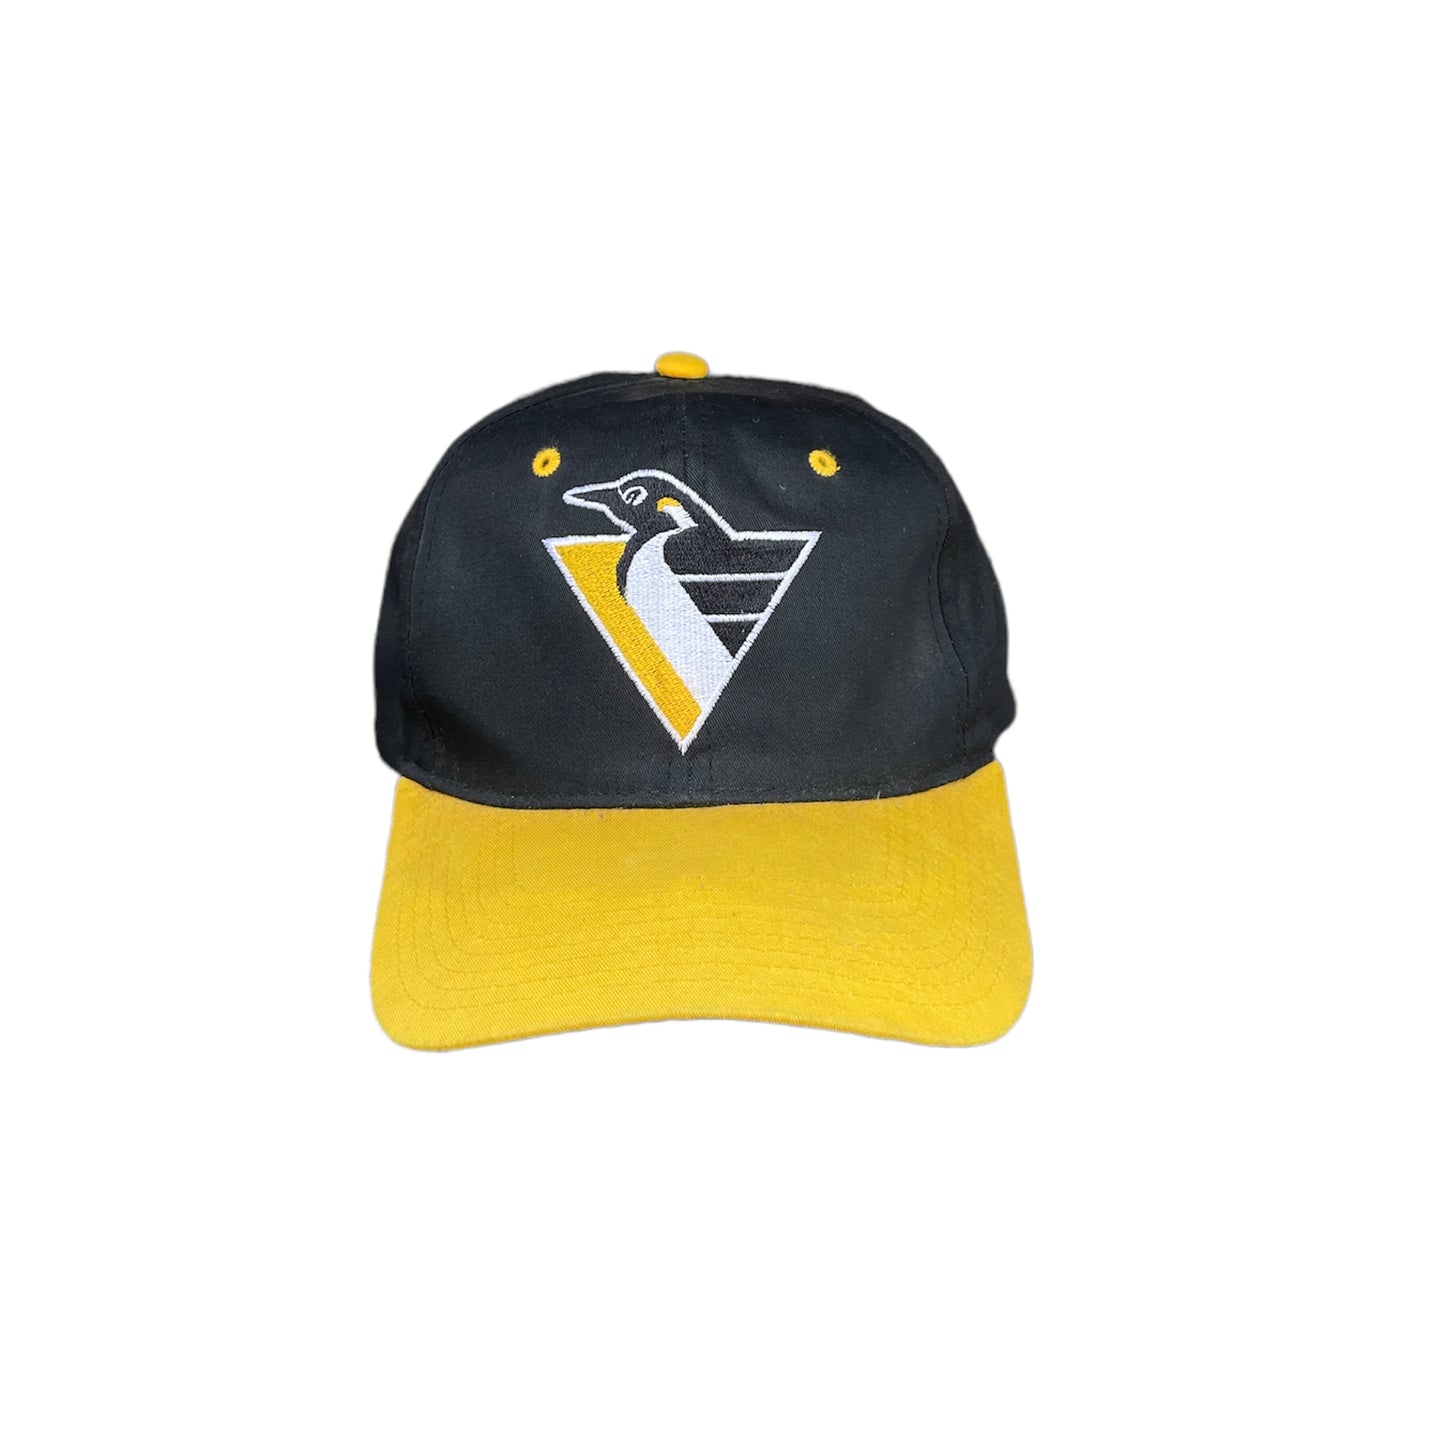 Vintage Pittsburgh Penguins Snapback Hat